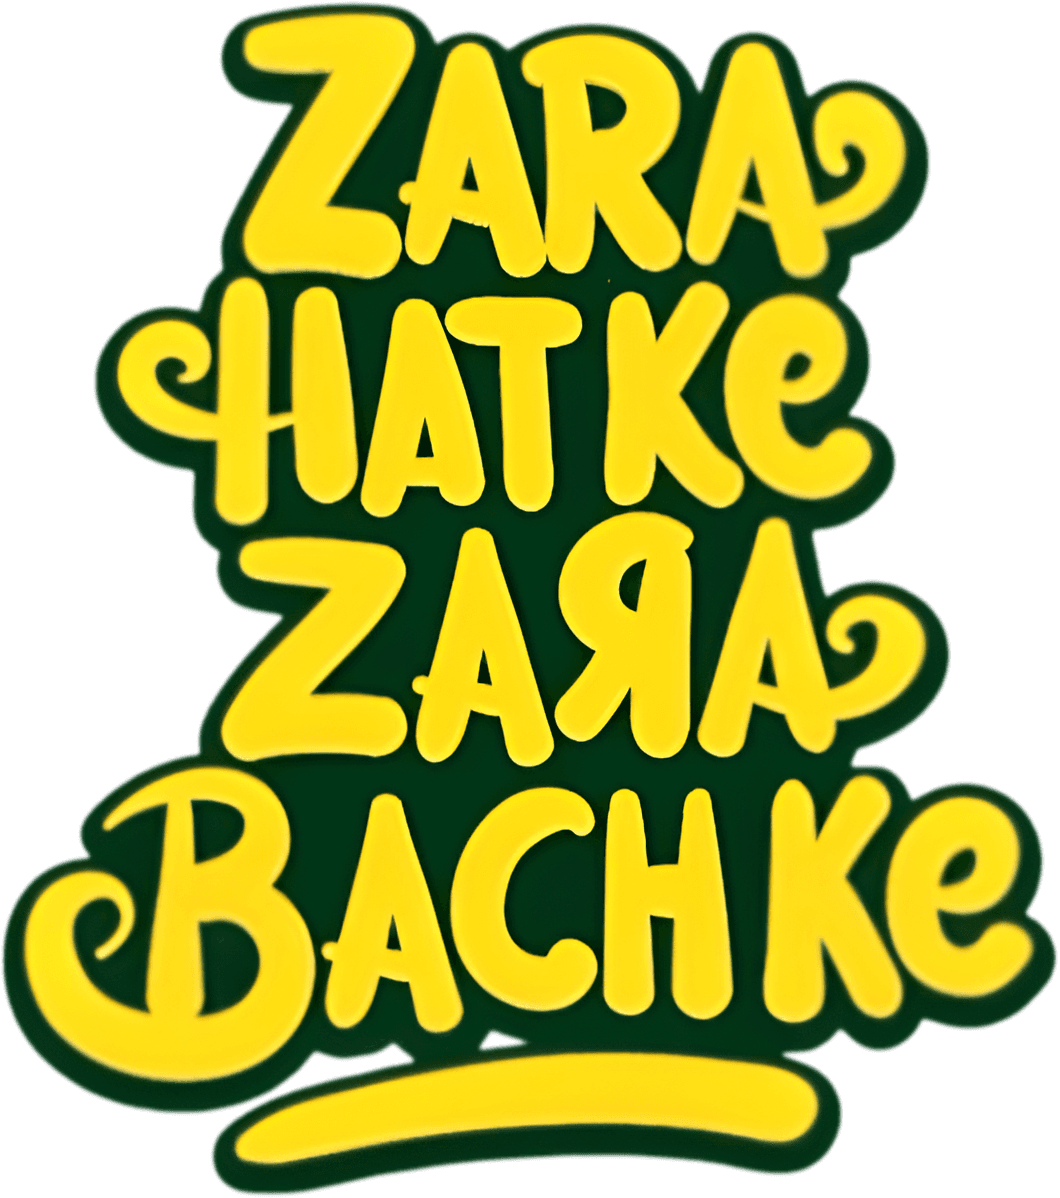 Zara Hatke Zara Bachke logo